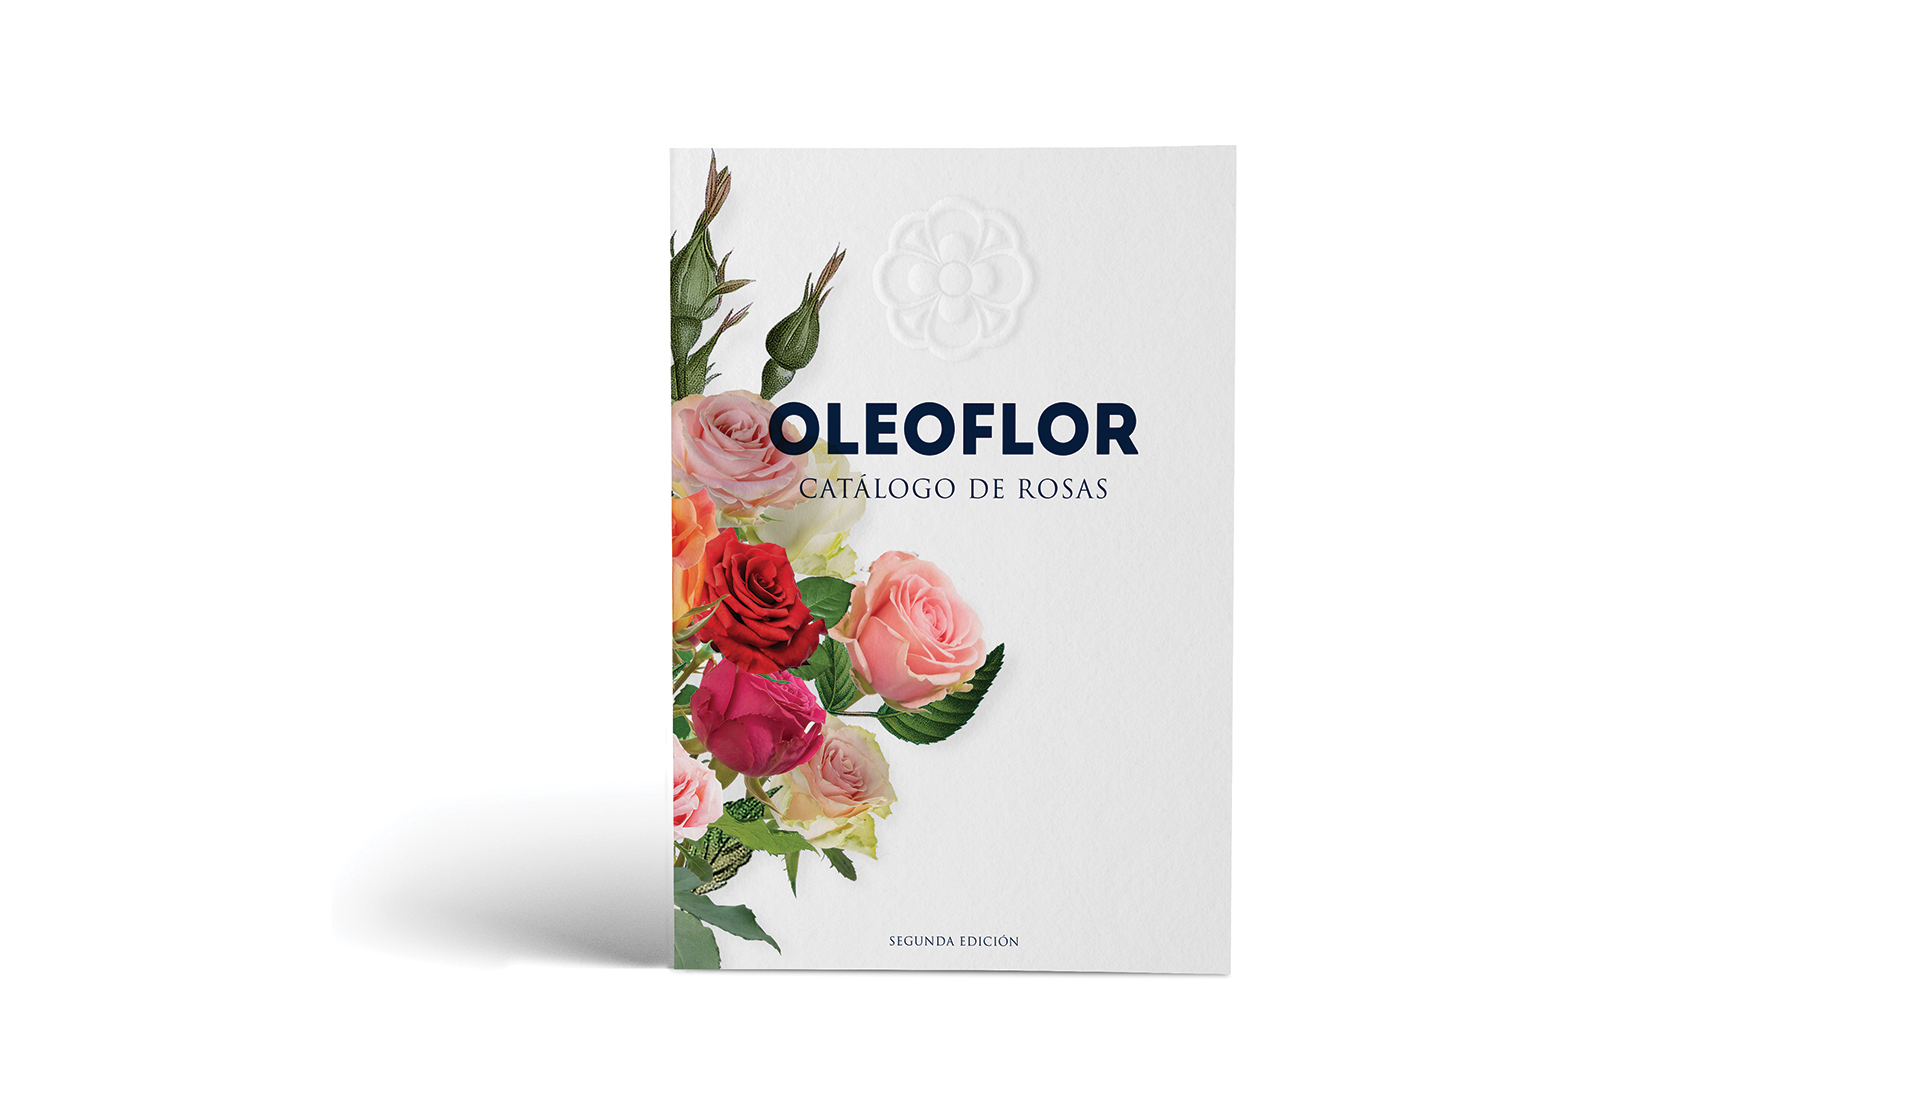 Oleoflor by Francia Serrano